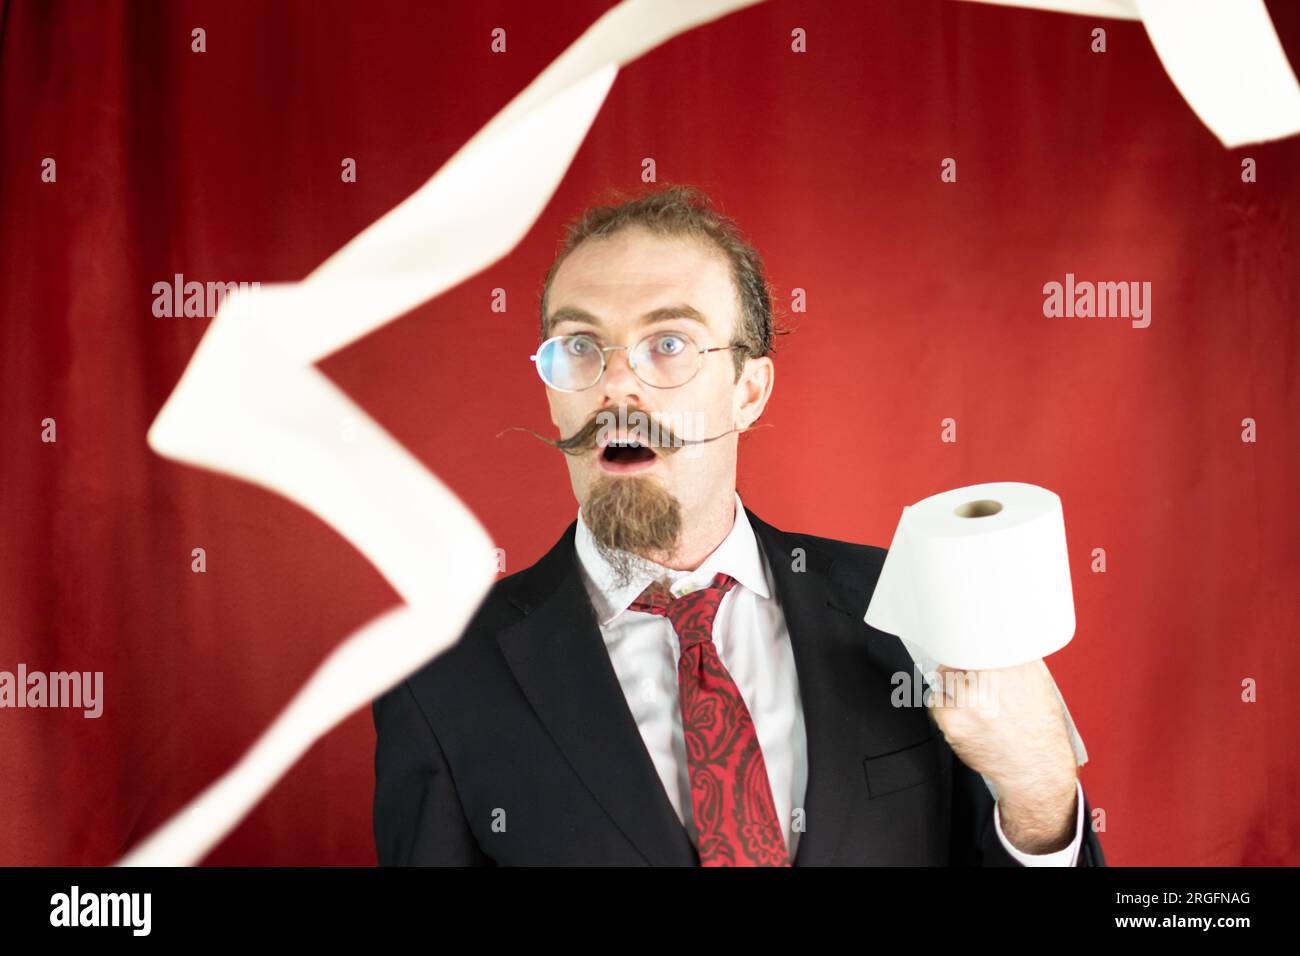 Homme choqué avec des lunettes, cravate rouge et papier toilette à la main regardant comment il vole Banque D'Images